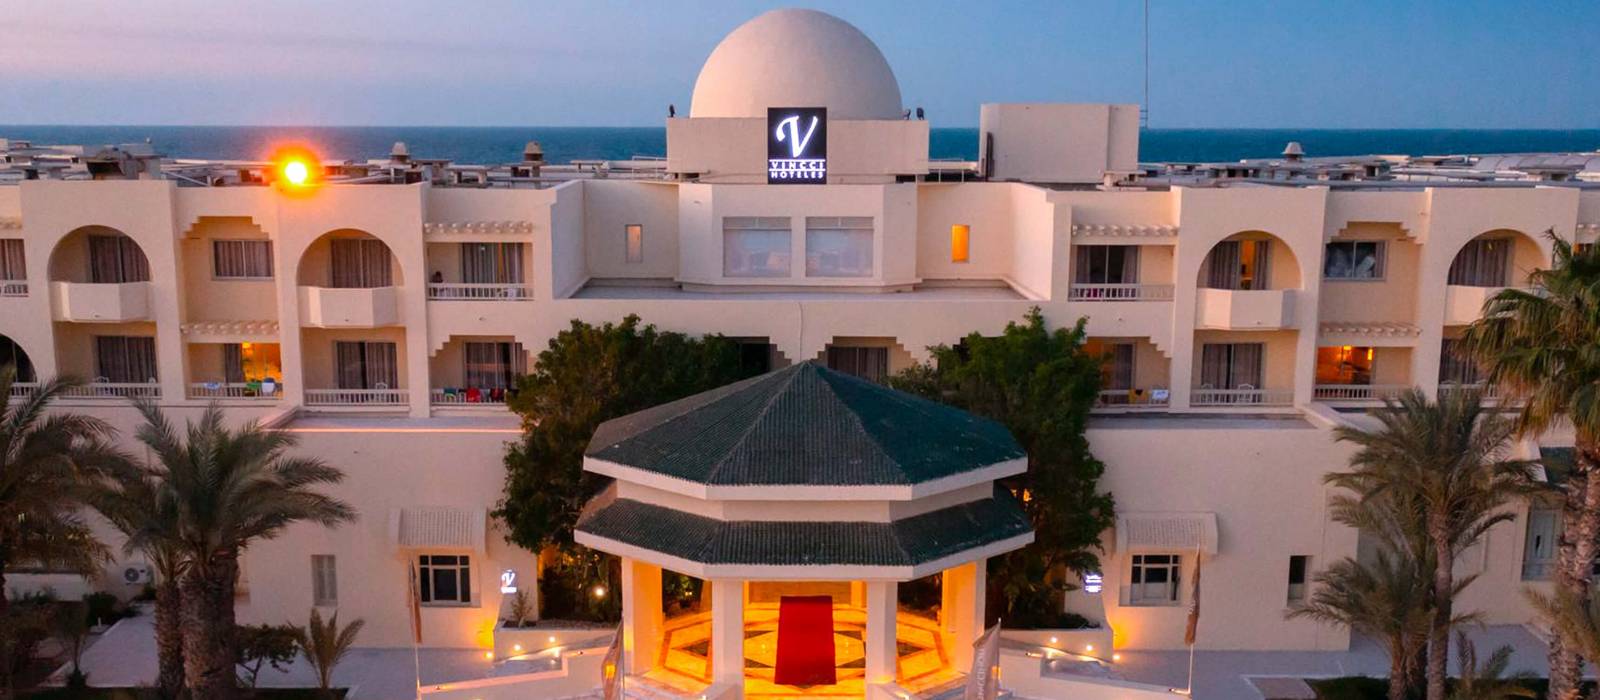 Fachada Hotel Dar Midoun - Vincci Hoteles